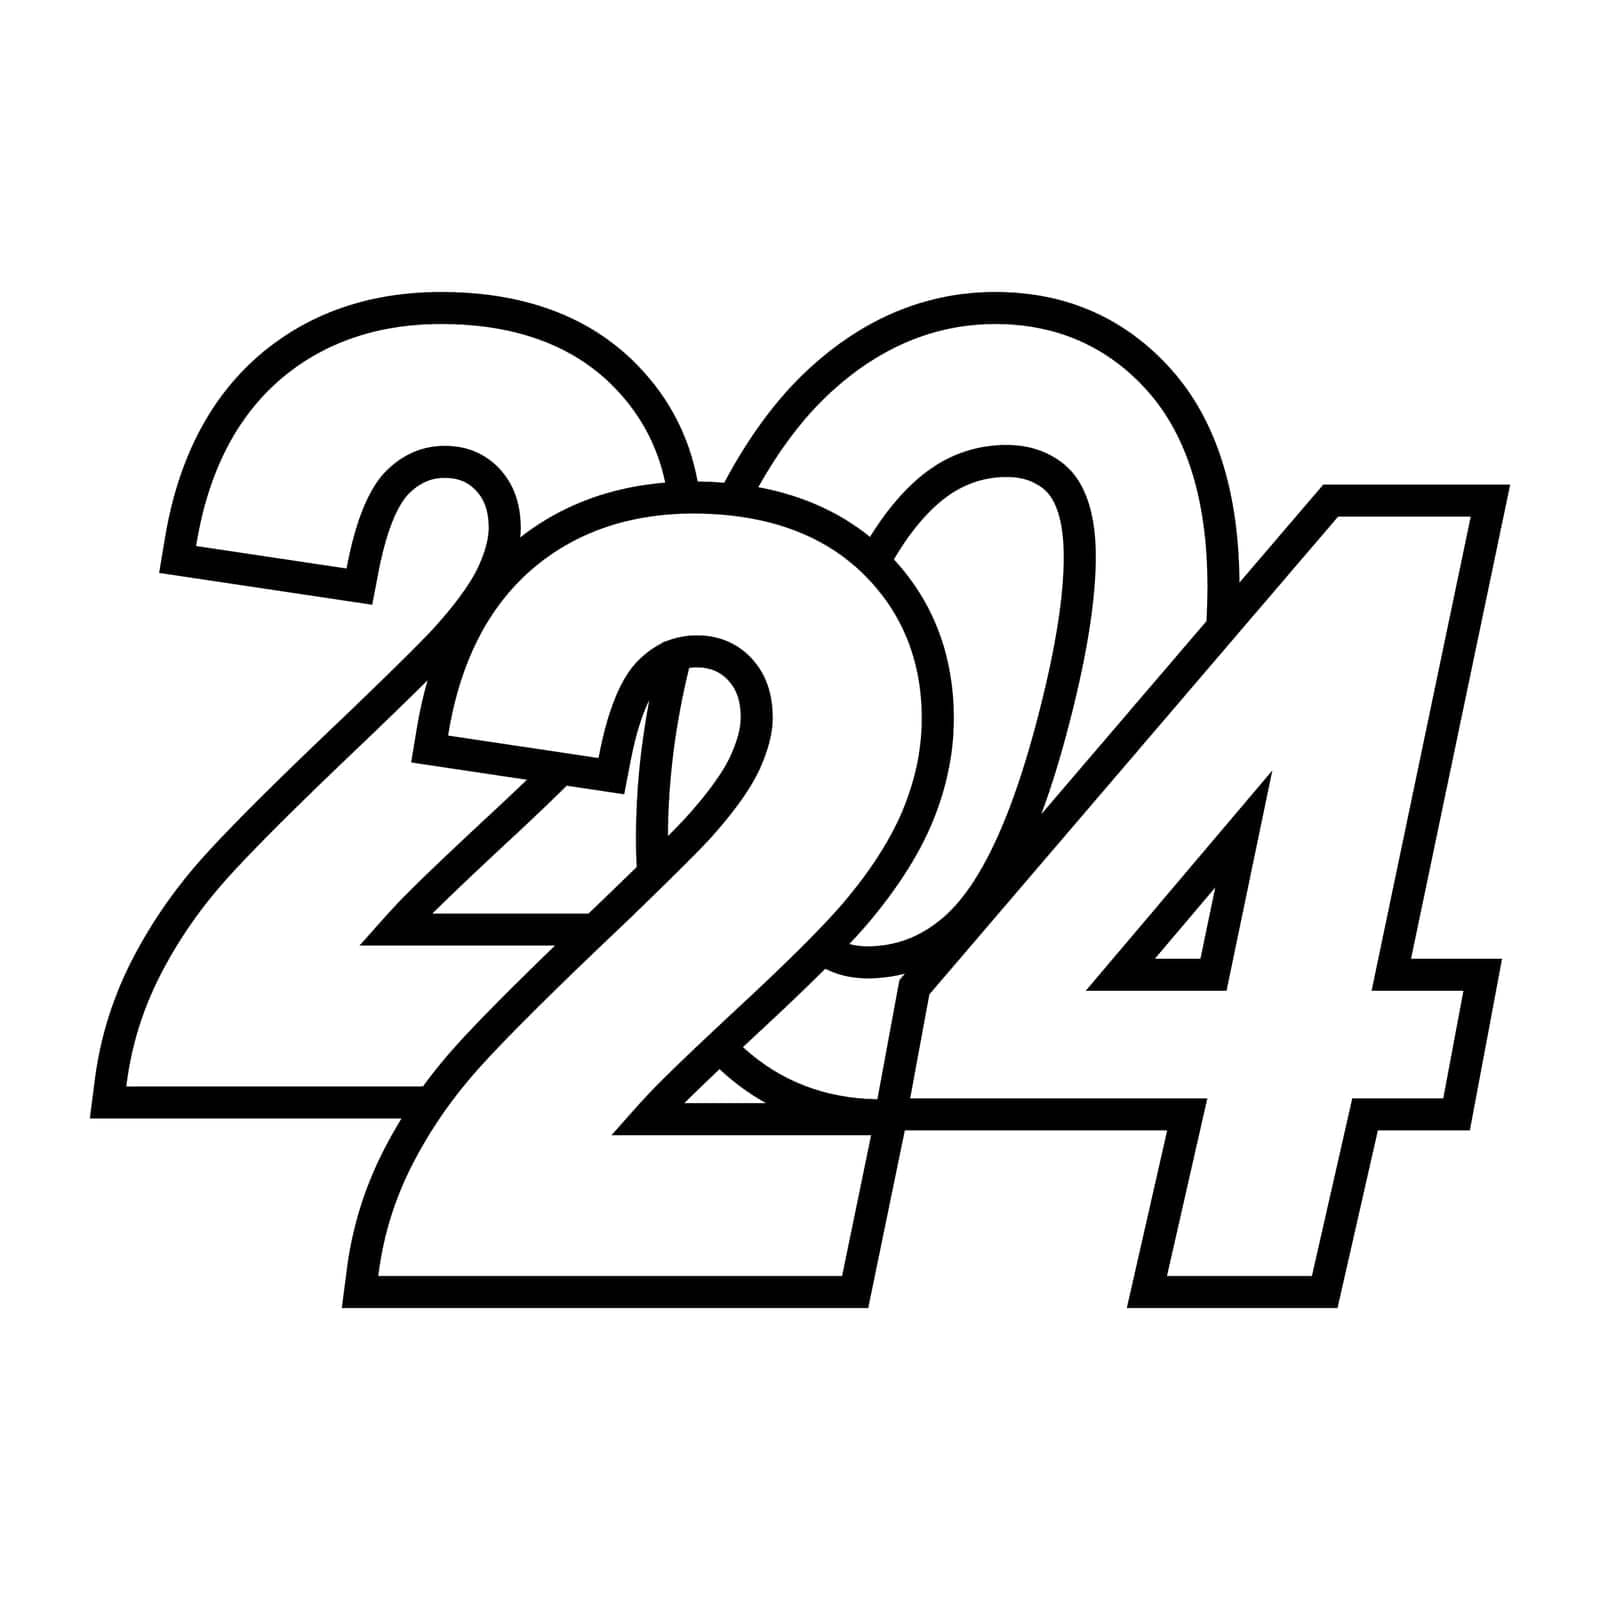 2024 logo lettering beveled font 24 medicine 2024 healthy lifestyle